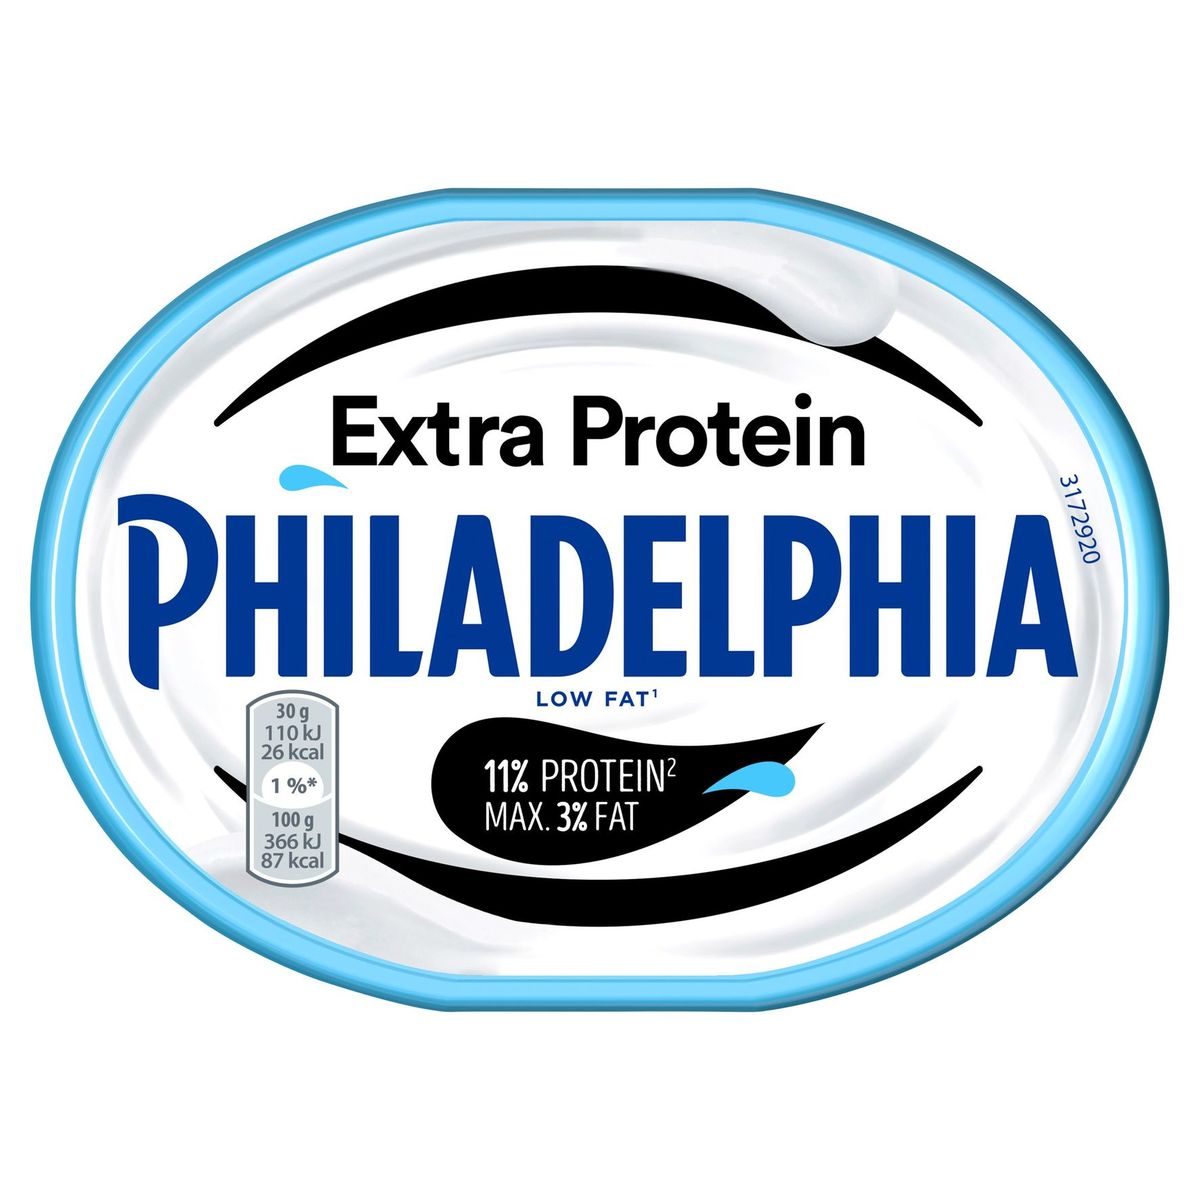 Philadelphia Extra Protein 175 g